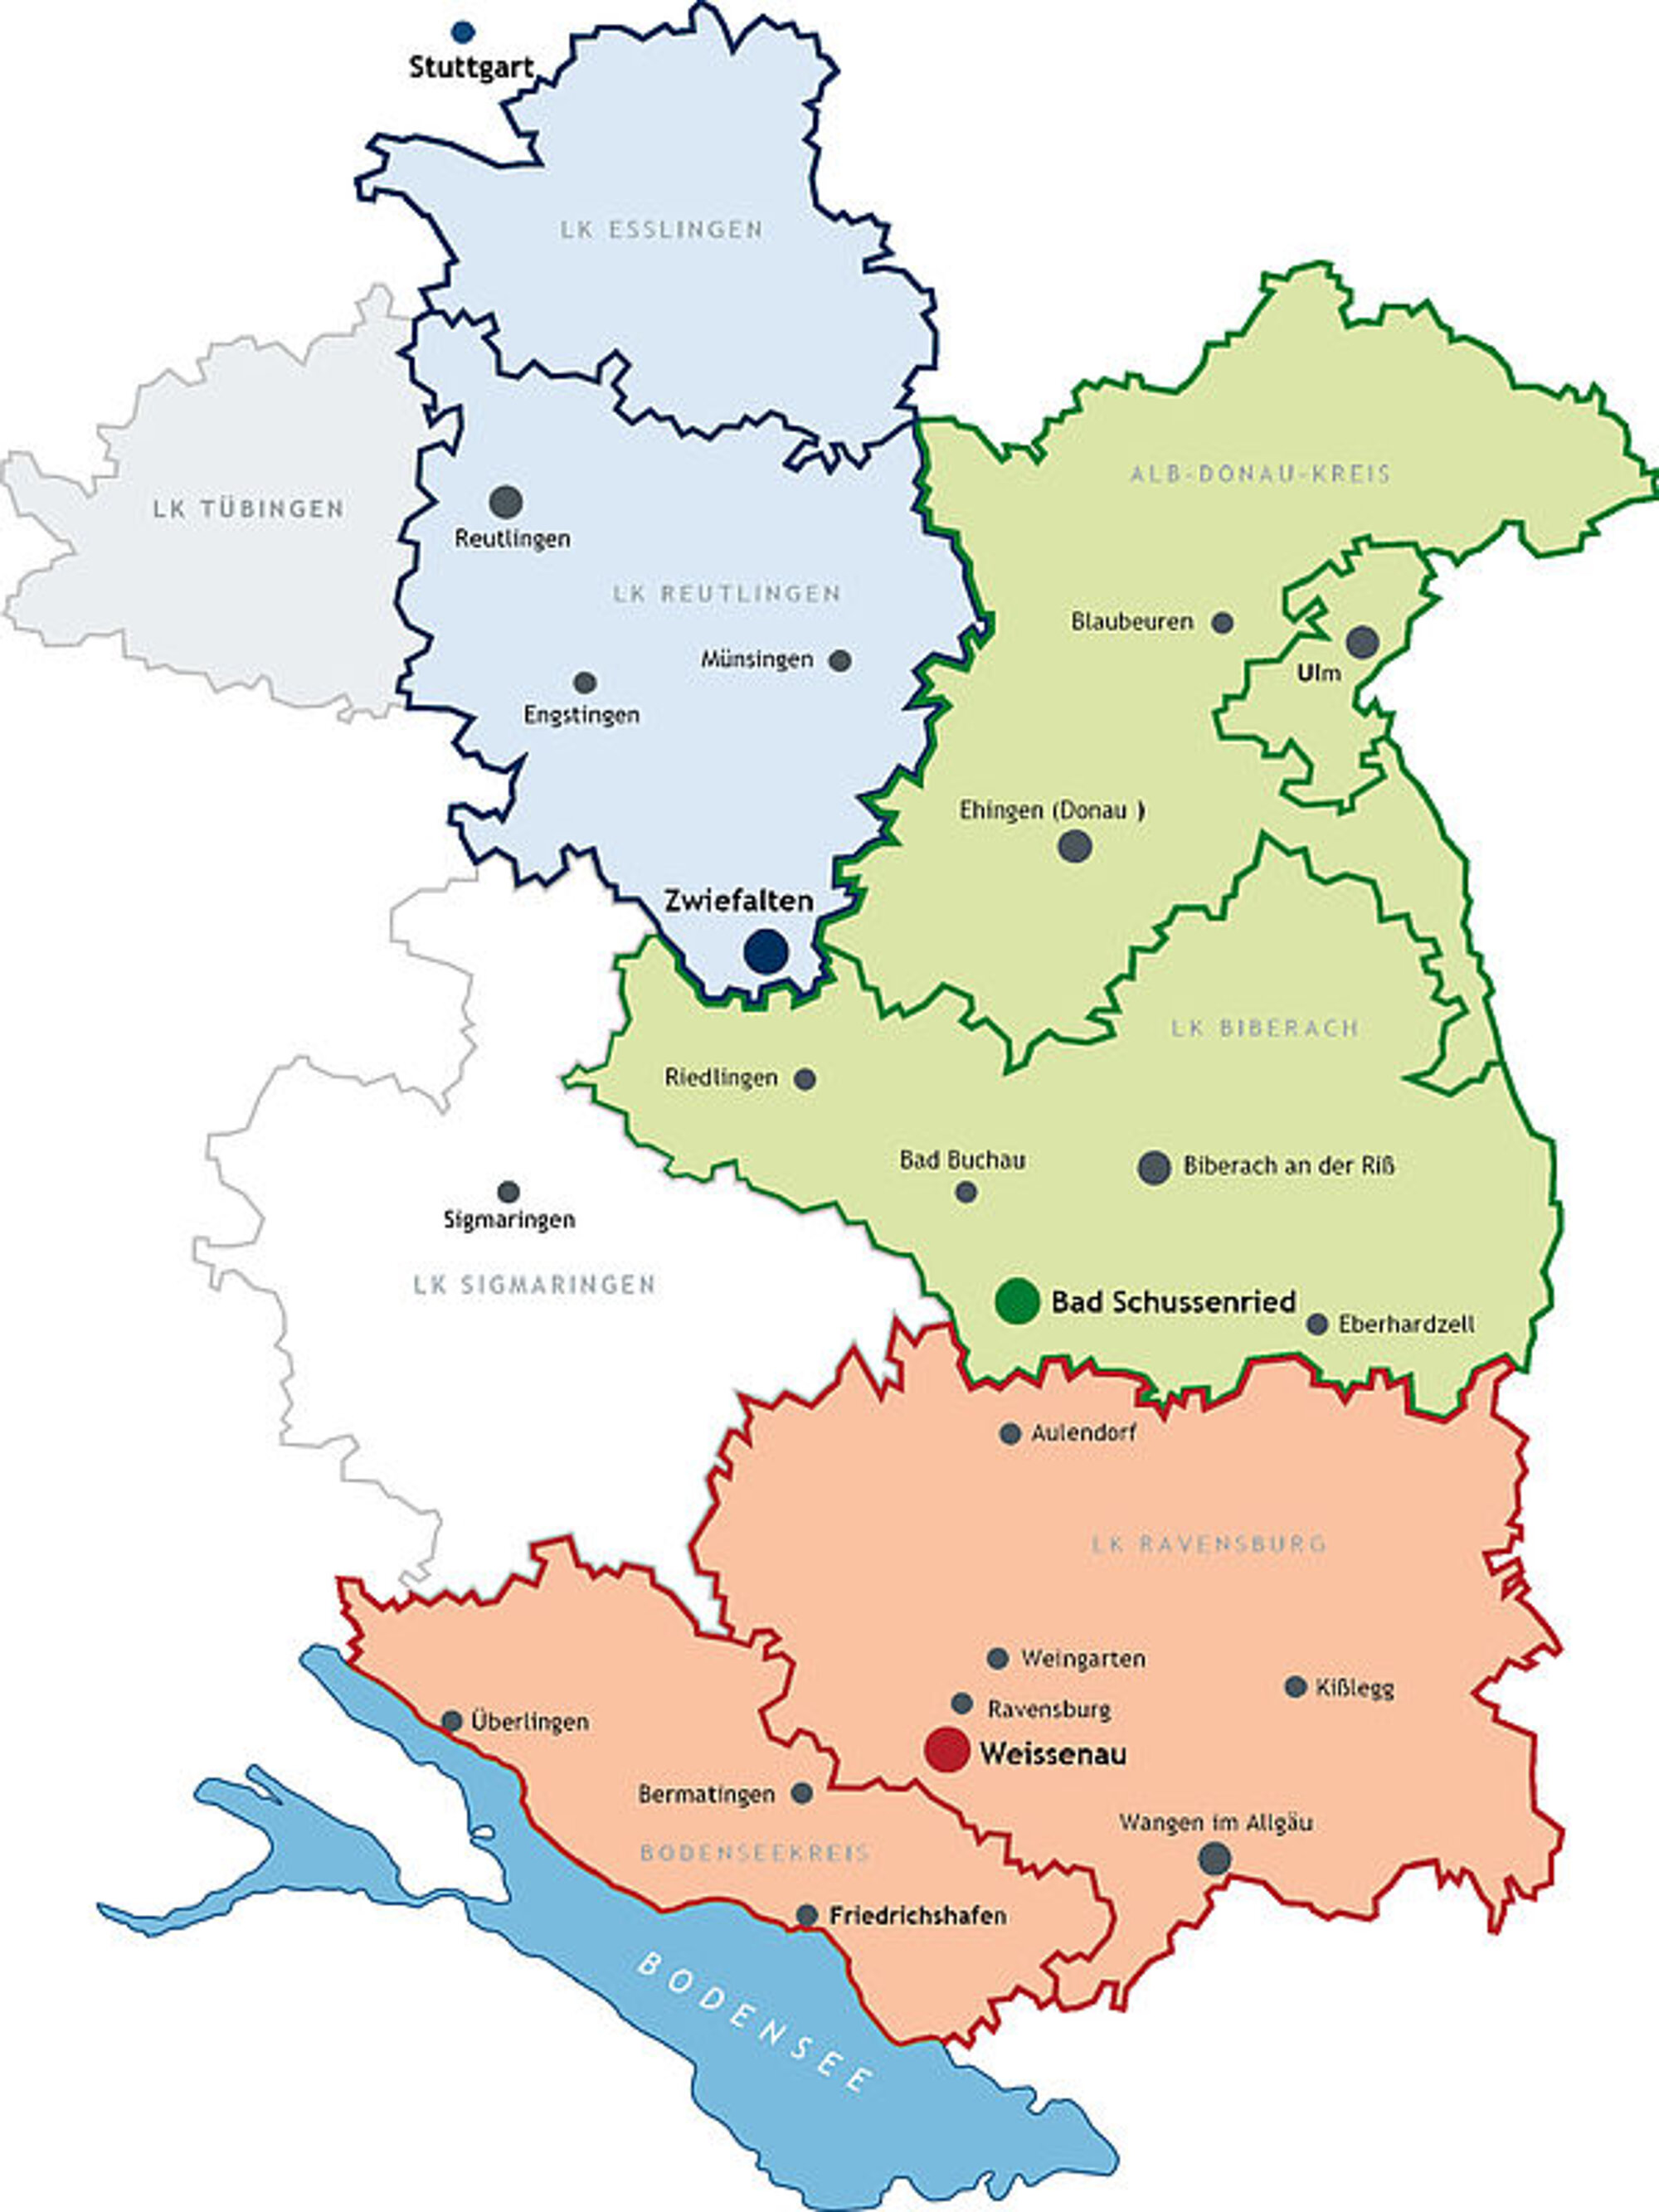 Das ZfP Südwürttemberg ist in 3 Gebiete unterteilt, welche auf der Karte farblich hinterlegt voneinander abgegrenzt dargestellt werden.